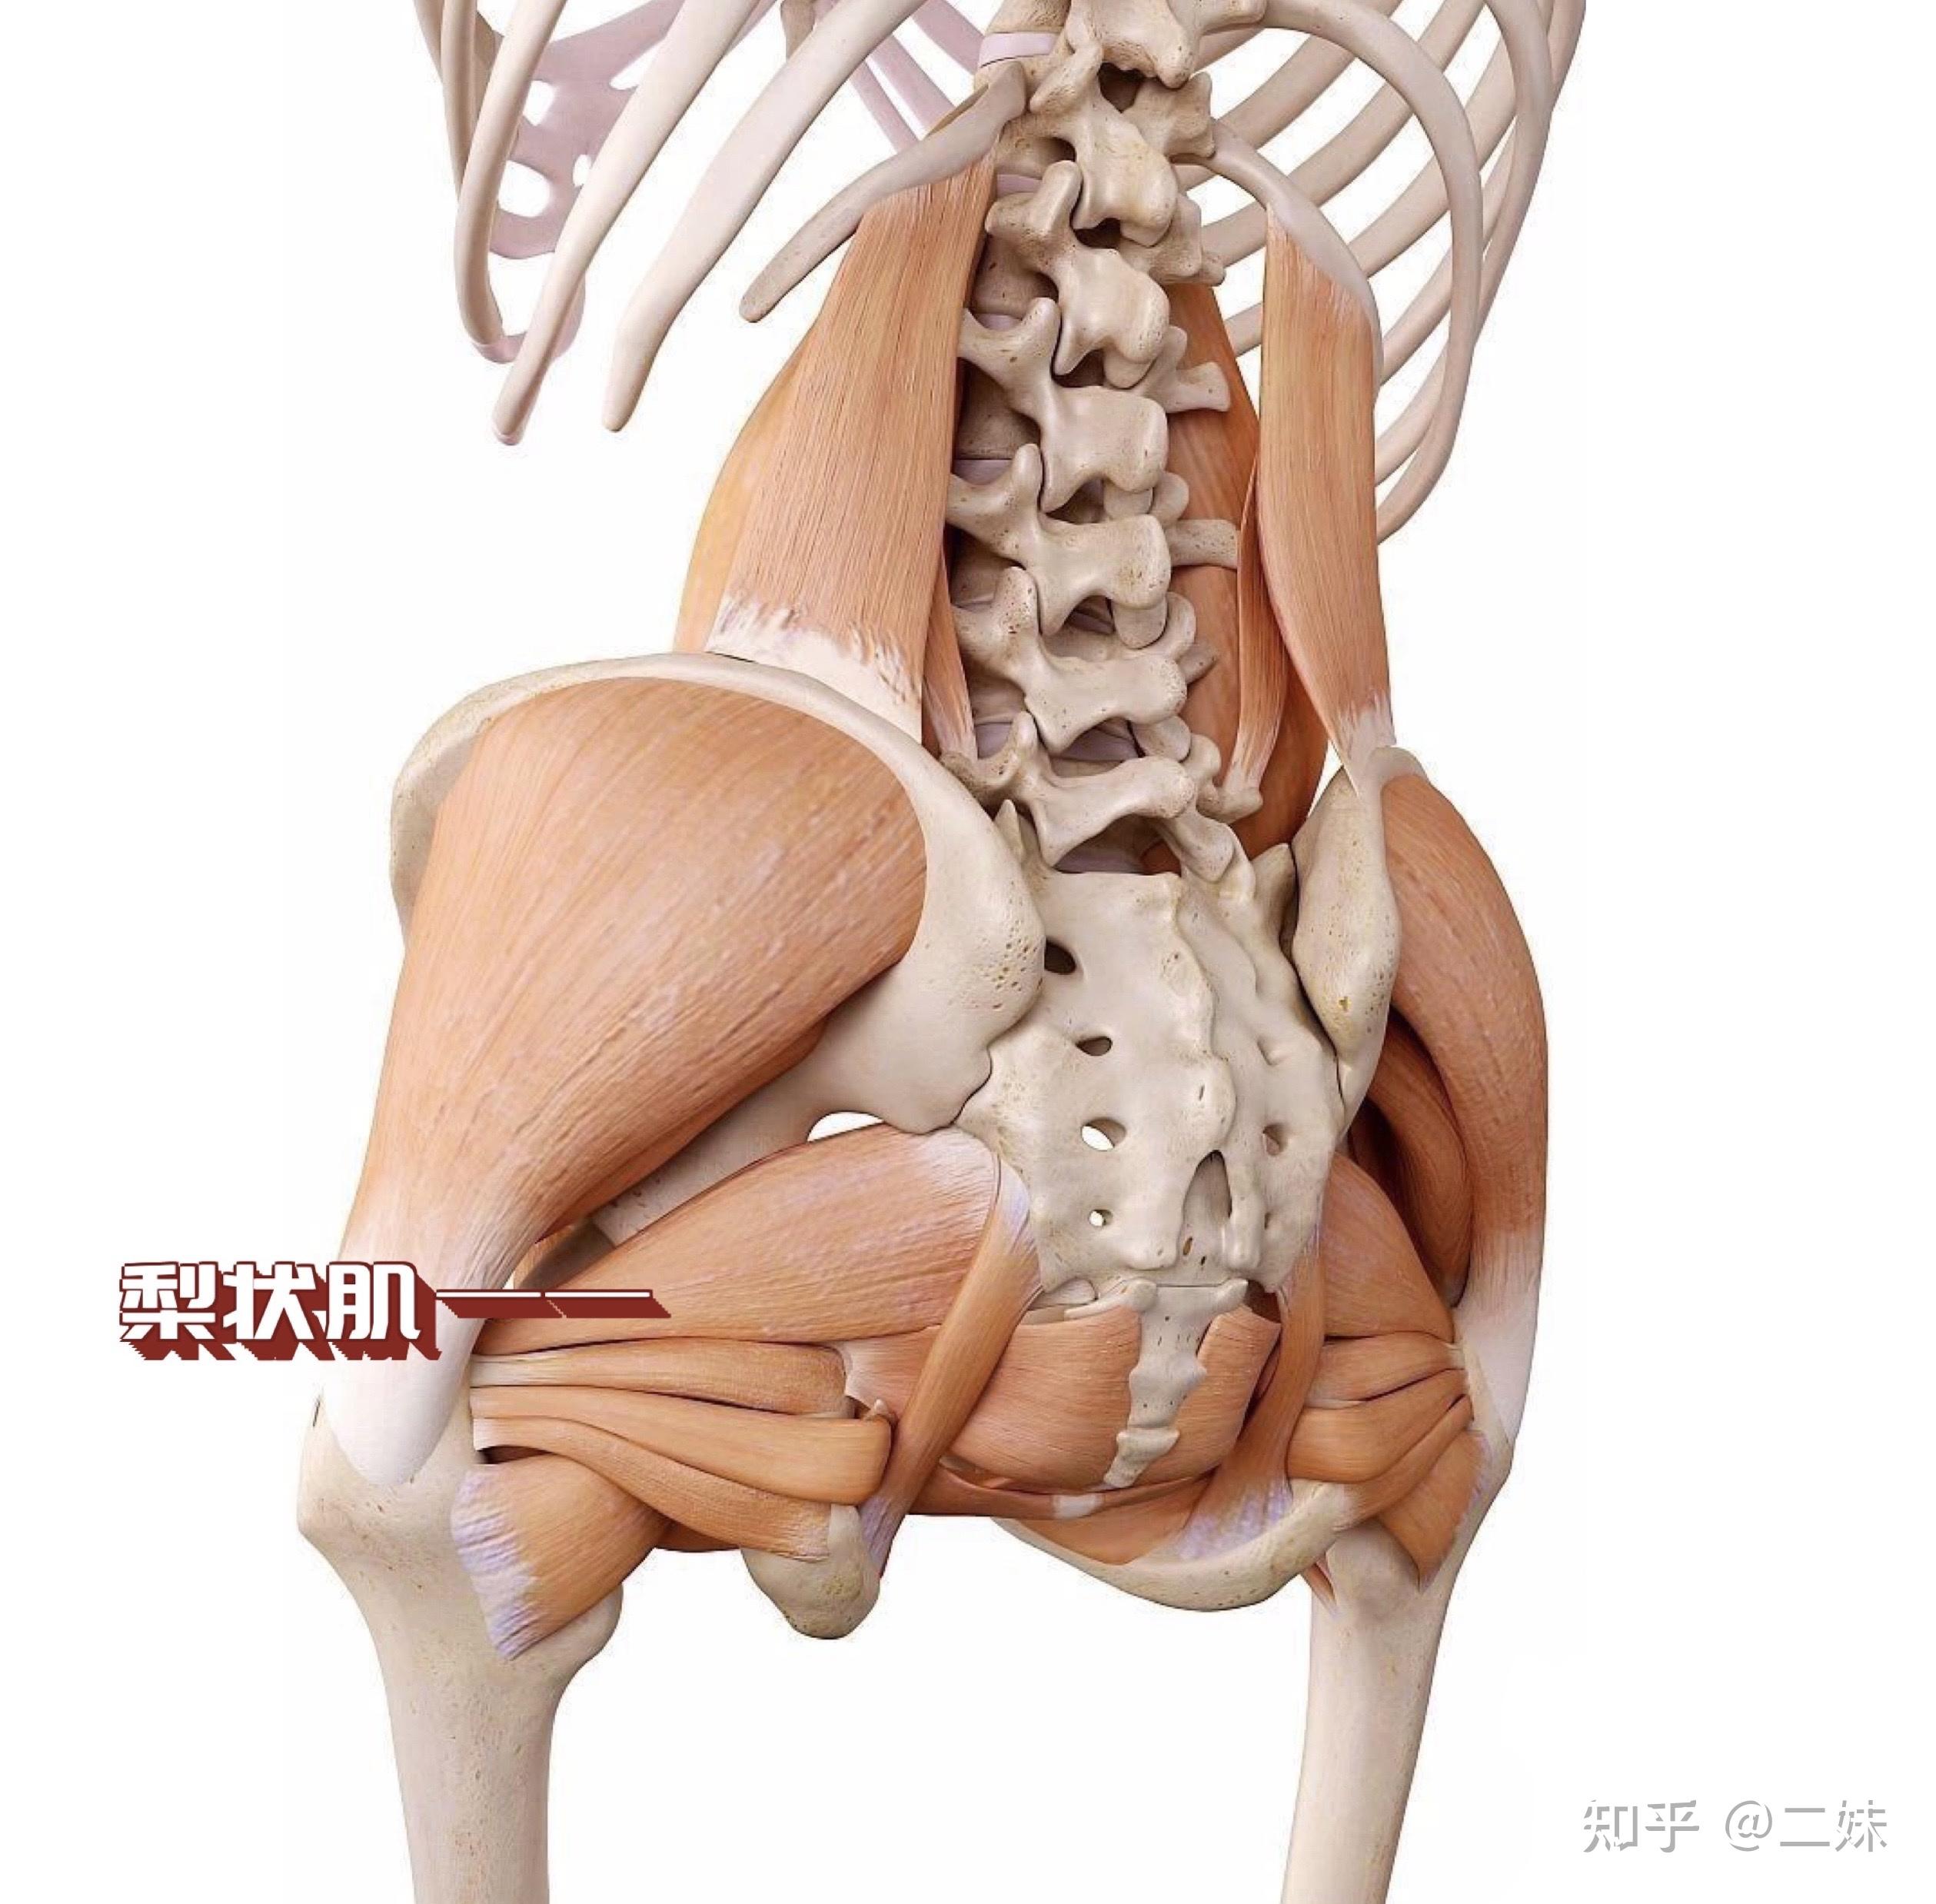 股后肌群包括哪些肌肉图片